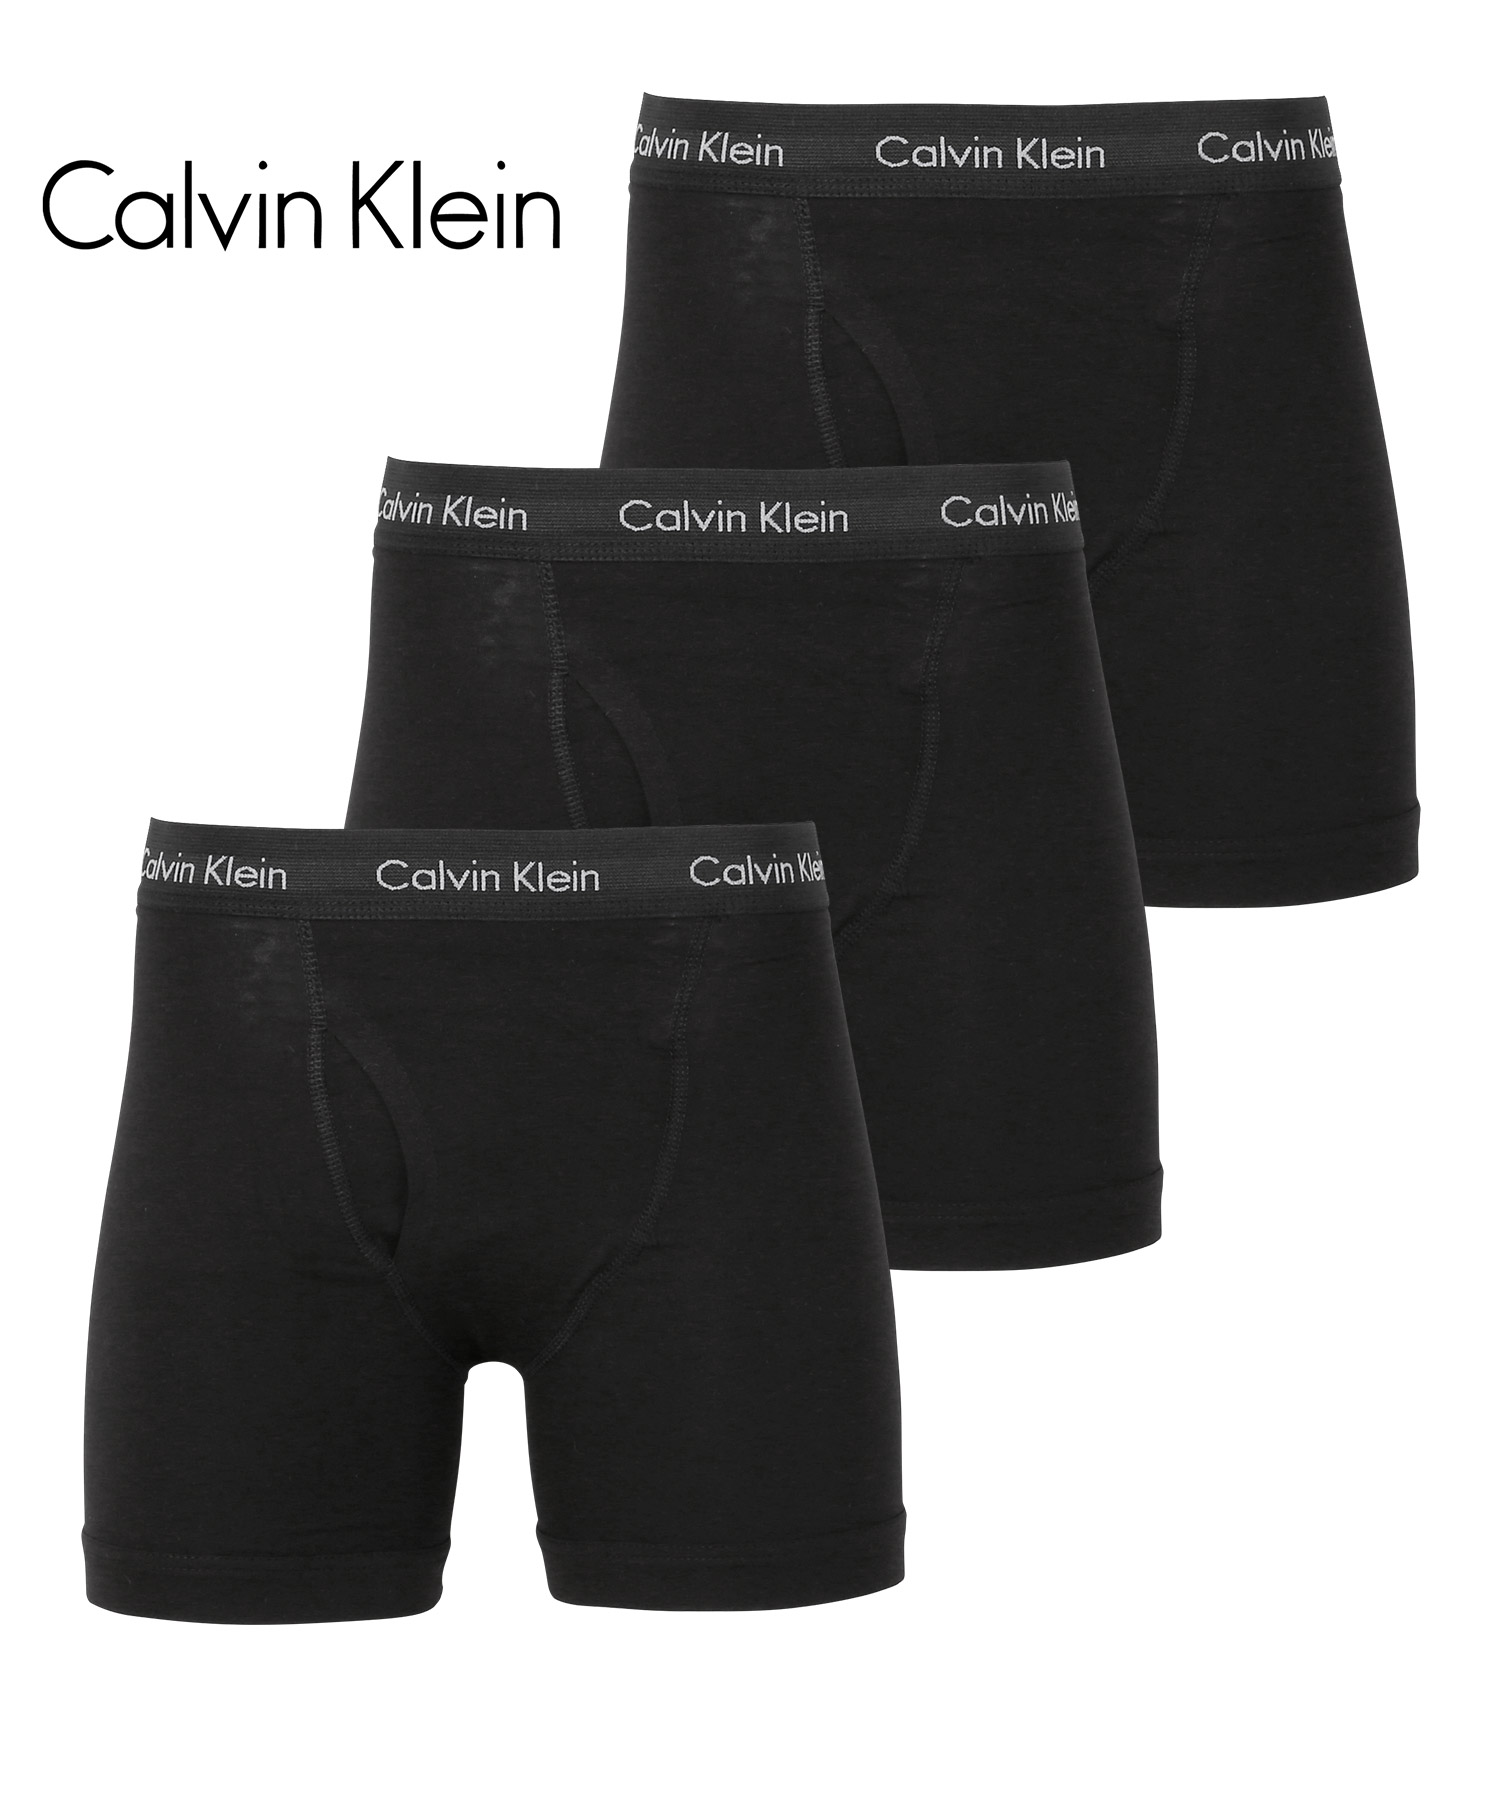 カルバンクライン ボクサーパンツ 3枚セット Calvin Klein ロング メンズ 下着 アンダ...